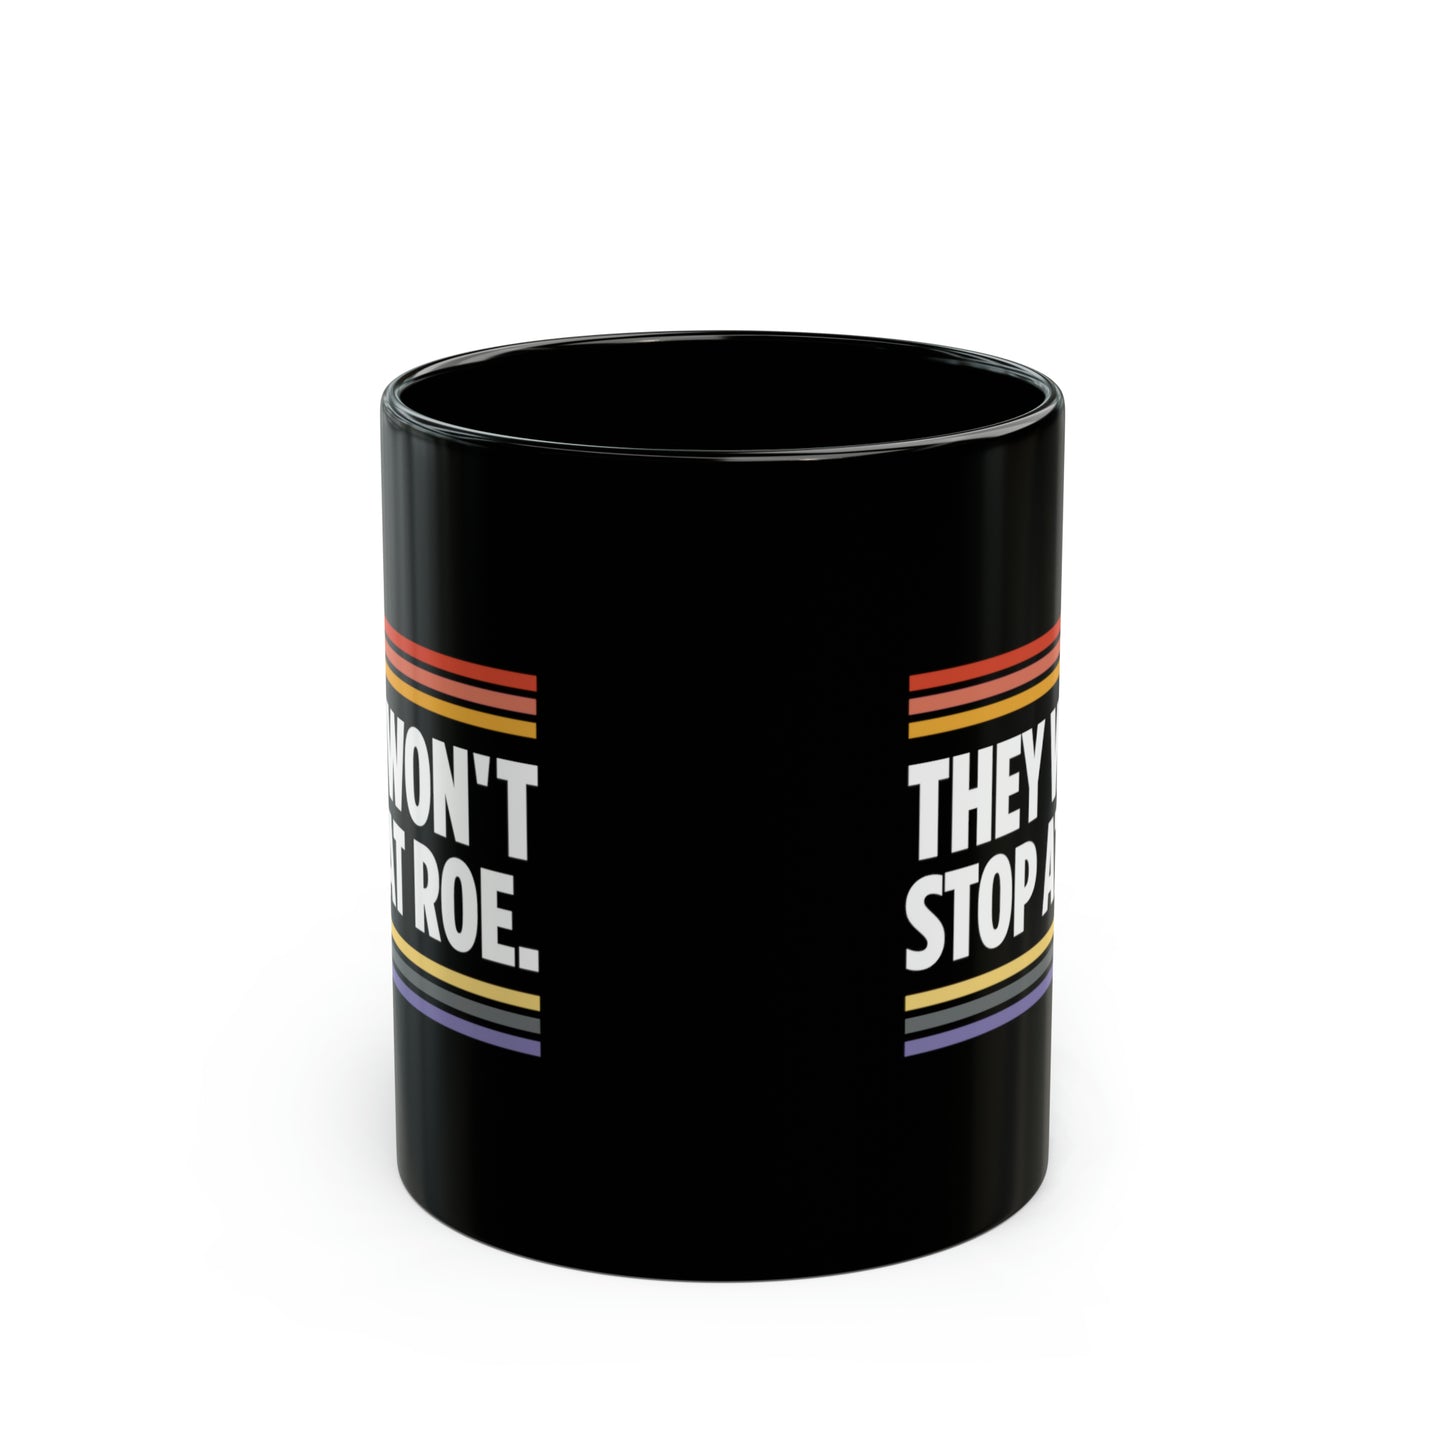 “They Won't Stop at Roe” 11 oz. Mug